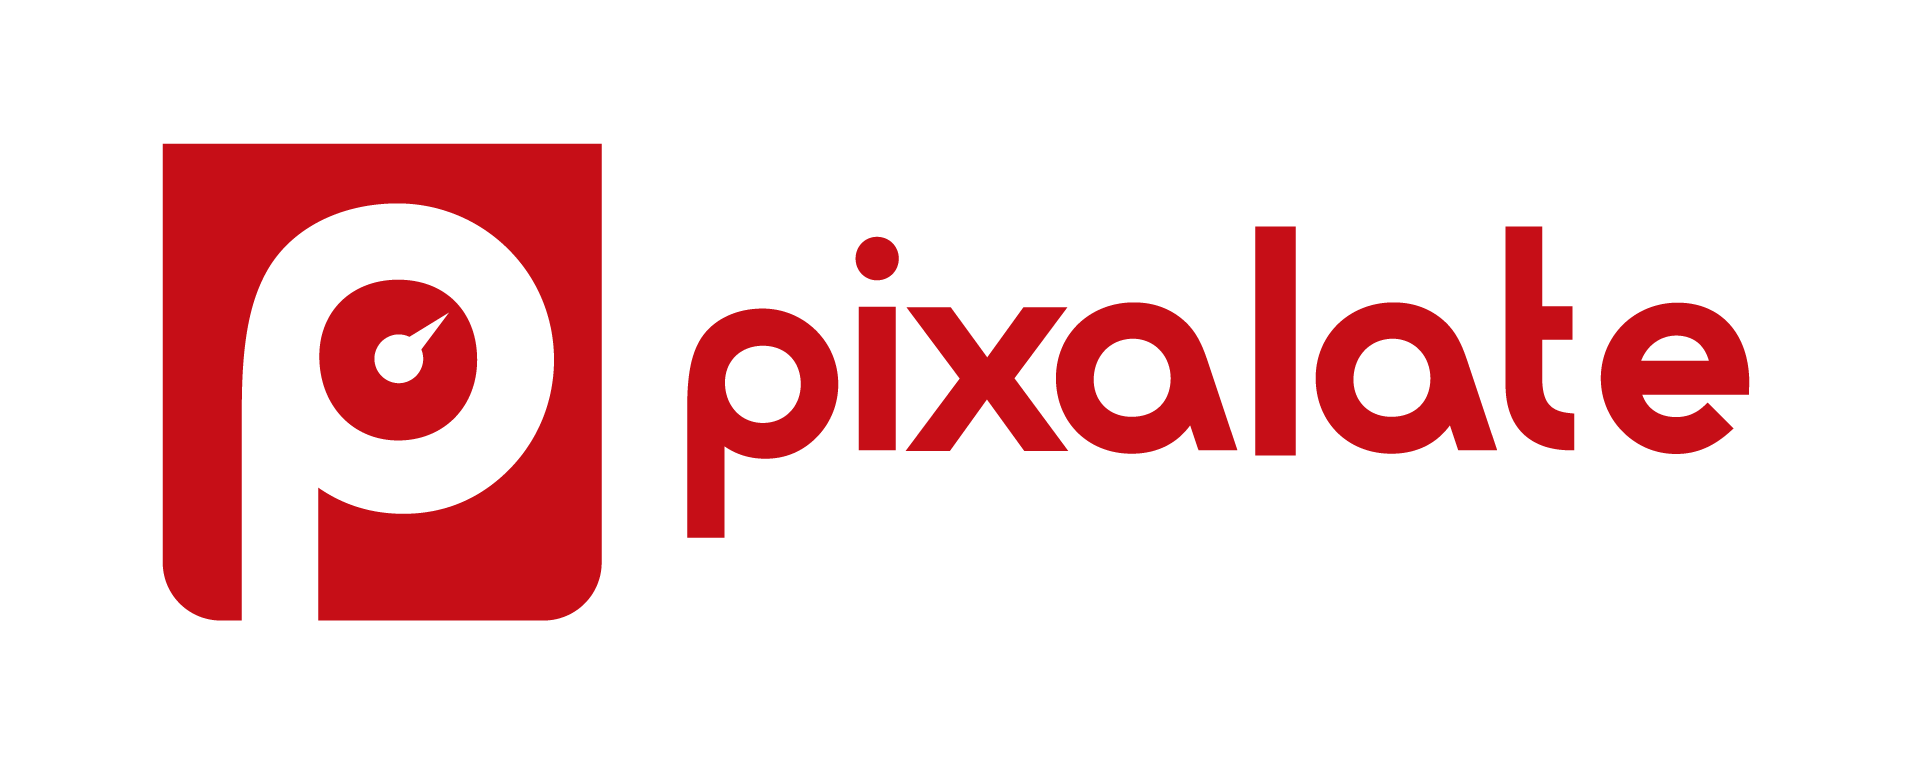 pixalate-full-logo (1)